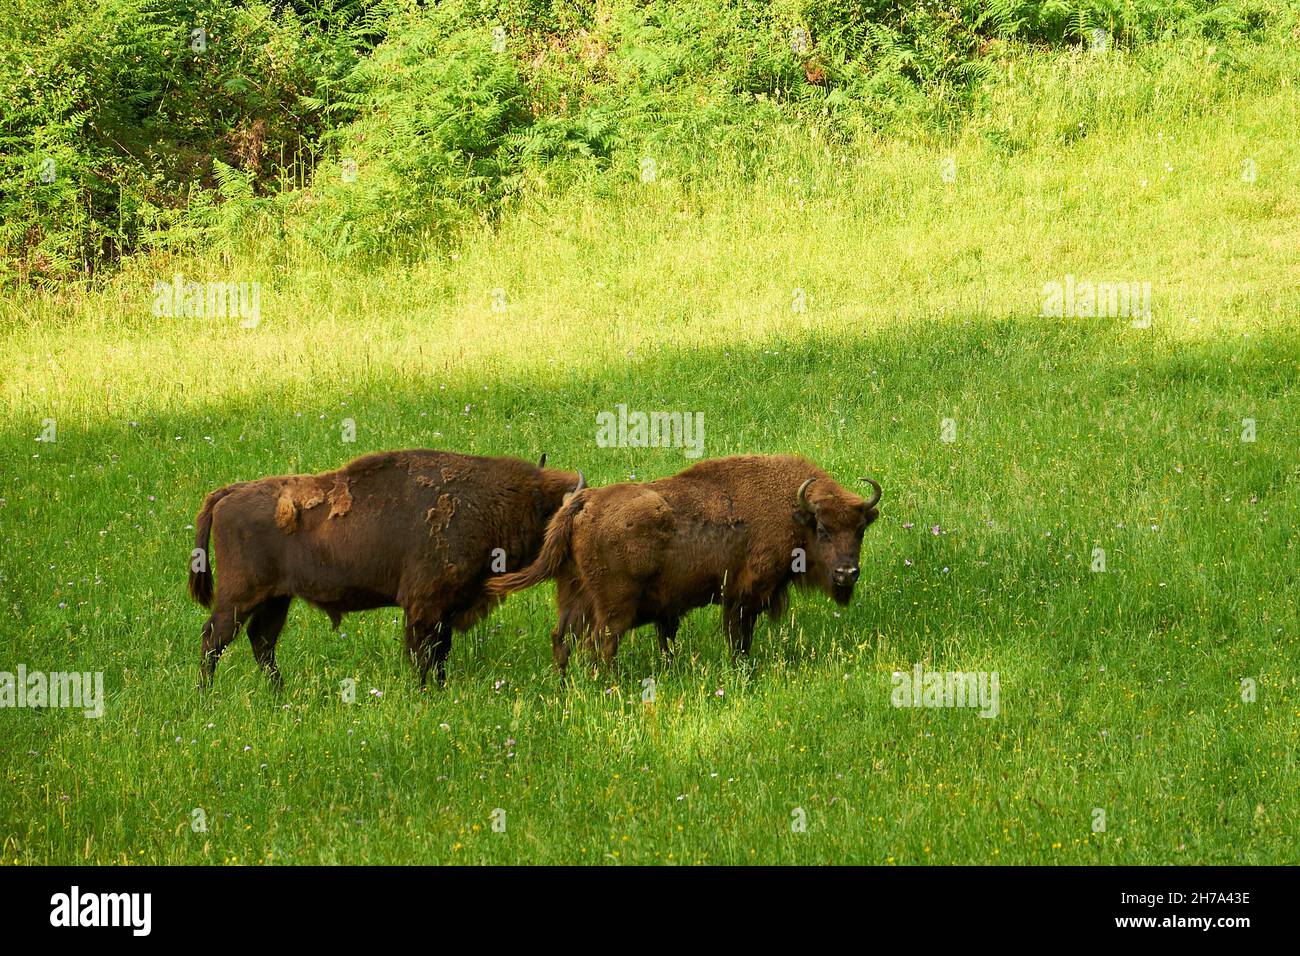 Einige europäische Bisons (Bison bonasus), genannt Lipión und Pipa, grasen in ihrem Gehege im prähistorischen Park von Teverga (Asturien, Spanien) Stockfoto